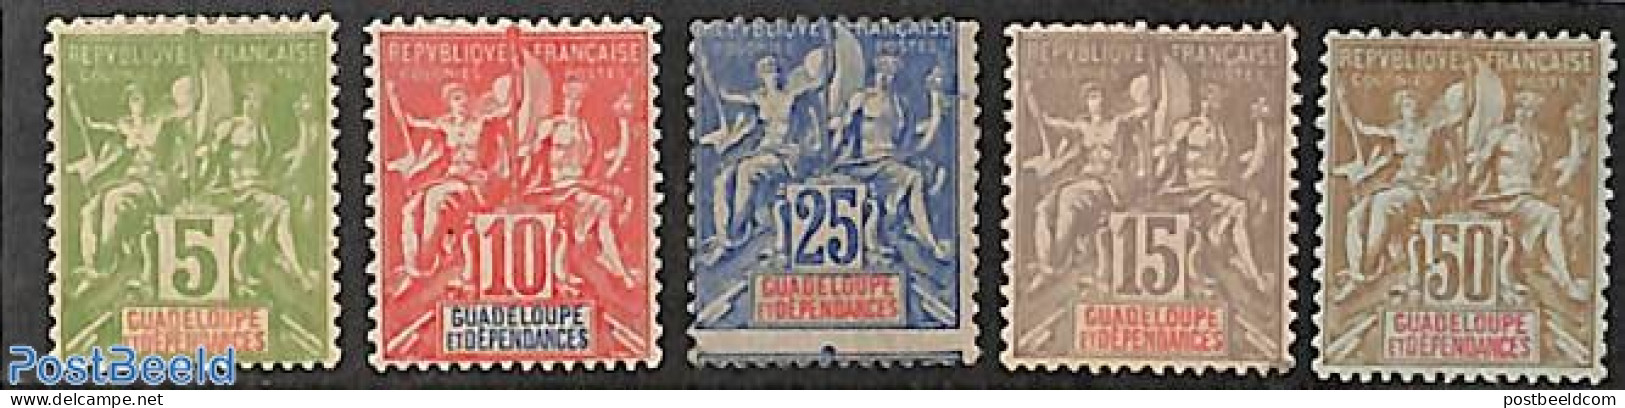 Guadeloupe 1900 Definitives 5v, Unused (hinged) - Neufs